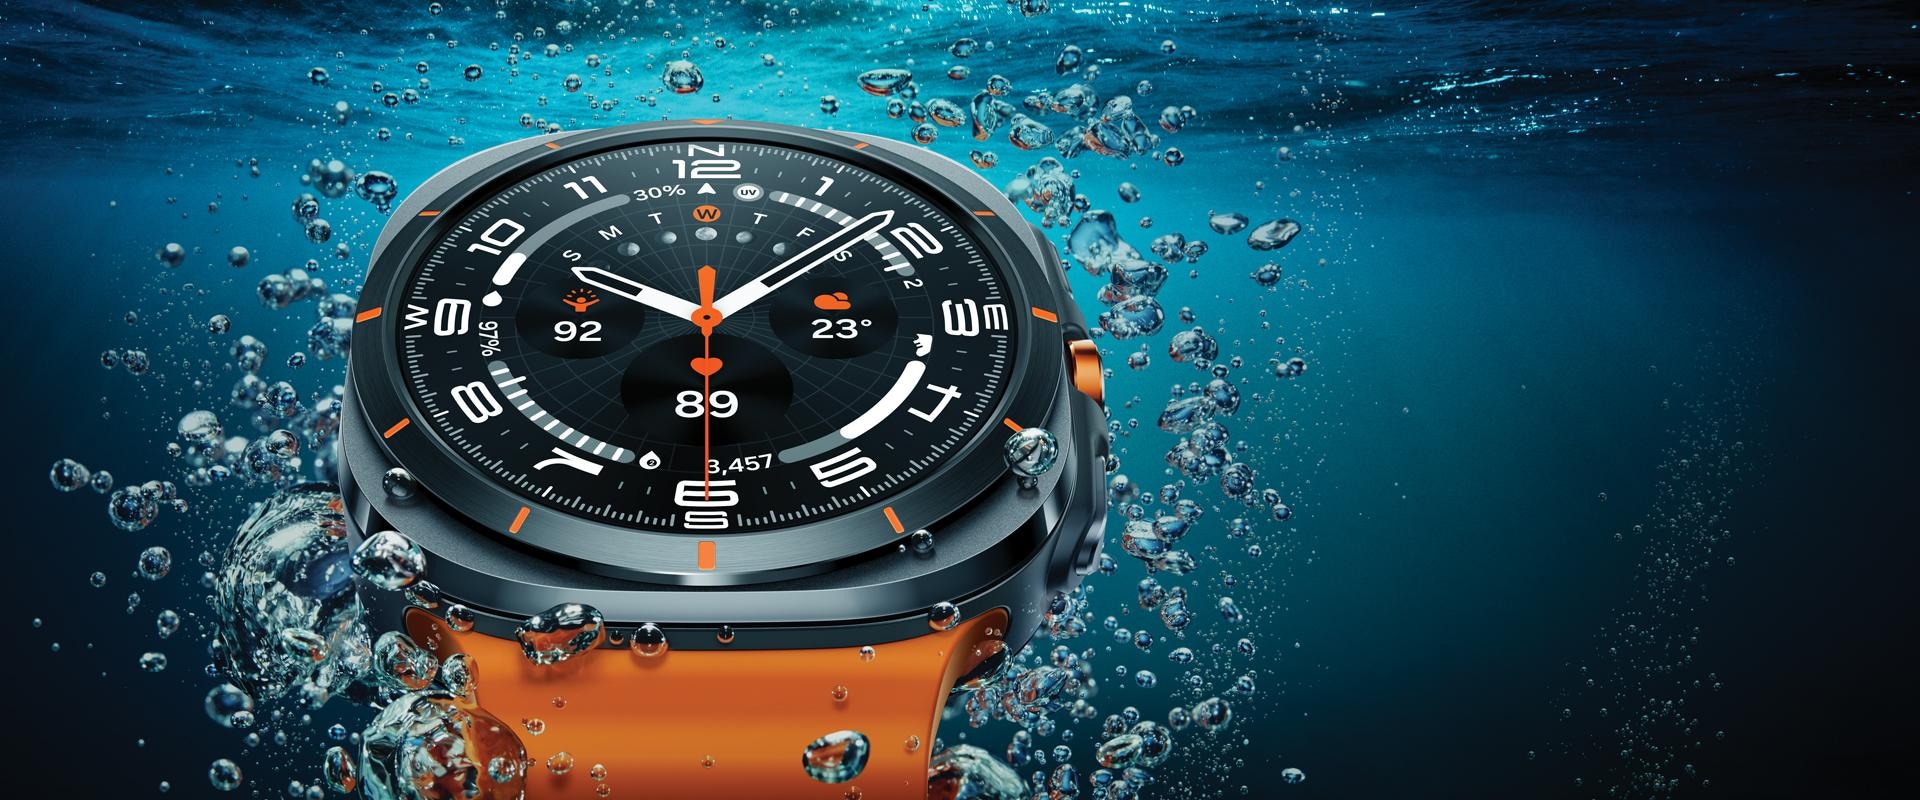 תקריב של Galaxy Watch Ultra שמציג את העיצוב שלו, בתוך המים וקרוב לפני המים.